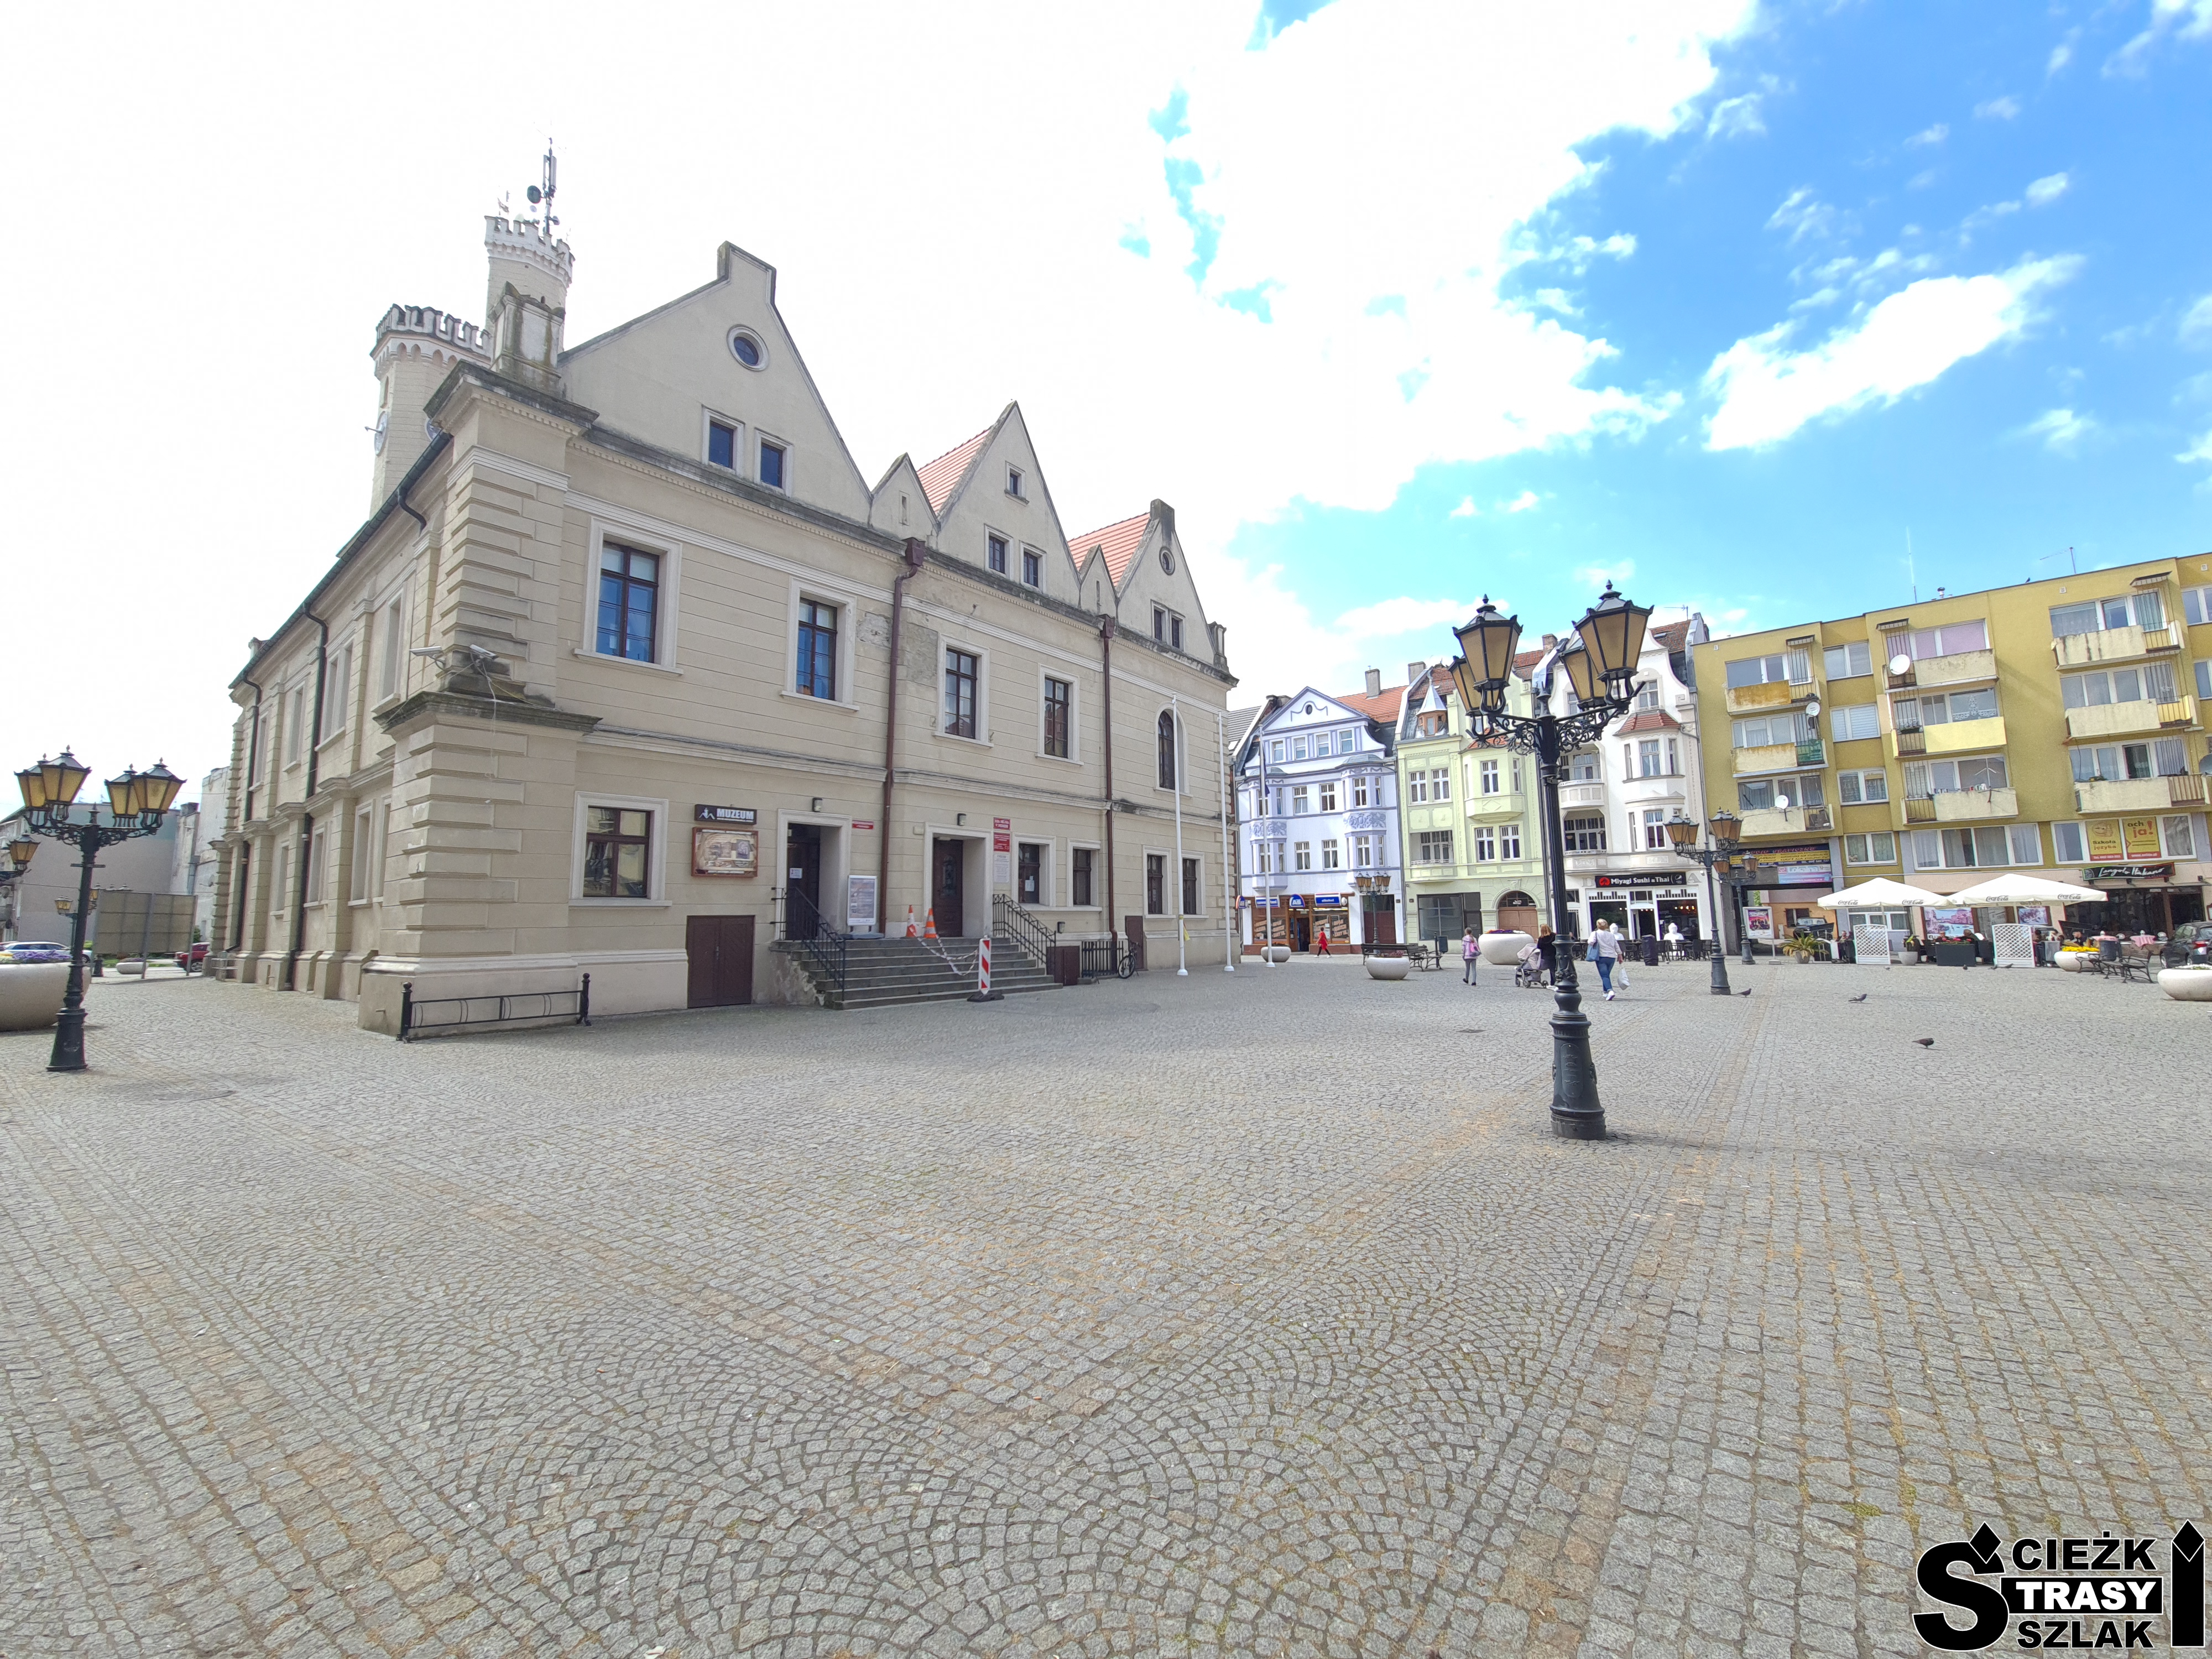 Rynek główny w centrum miasta w Świebodzinie z główną atrakcją - ratuszem z wieżą, skąd rozbrzmiewa hejnał Świebodzina